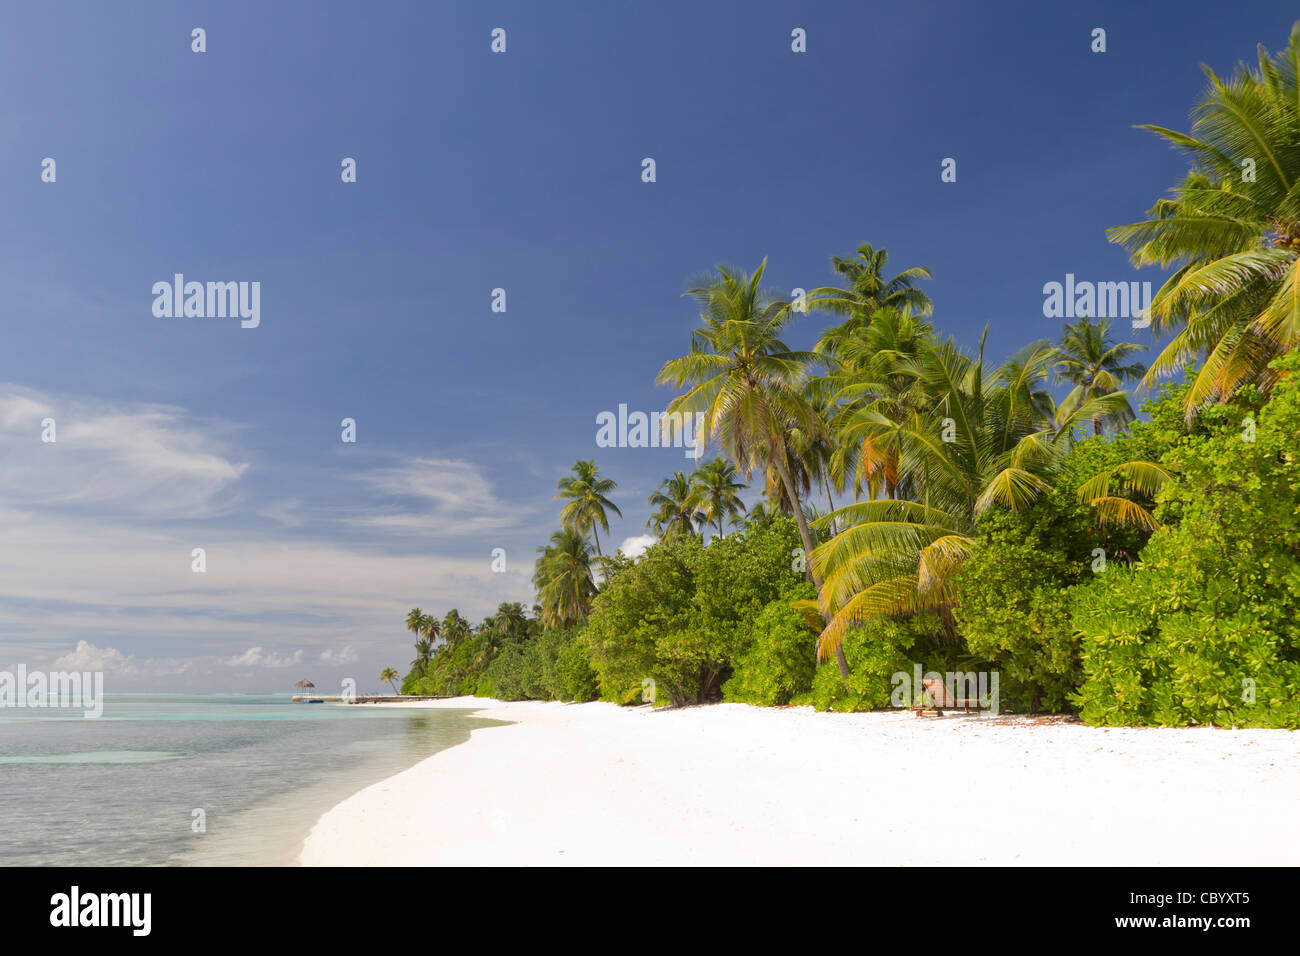 Medhufushi Island in Maldives Stock Photo - Alamy